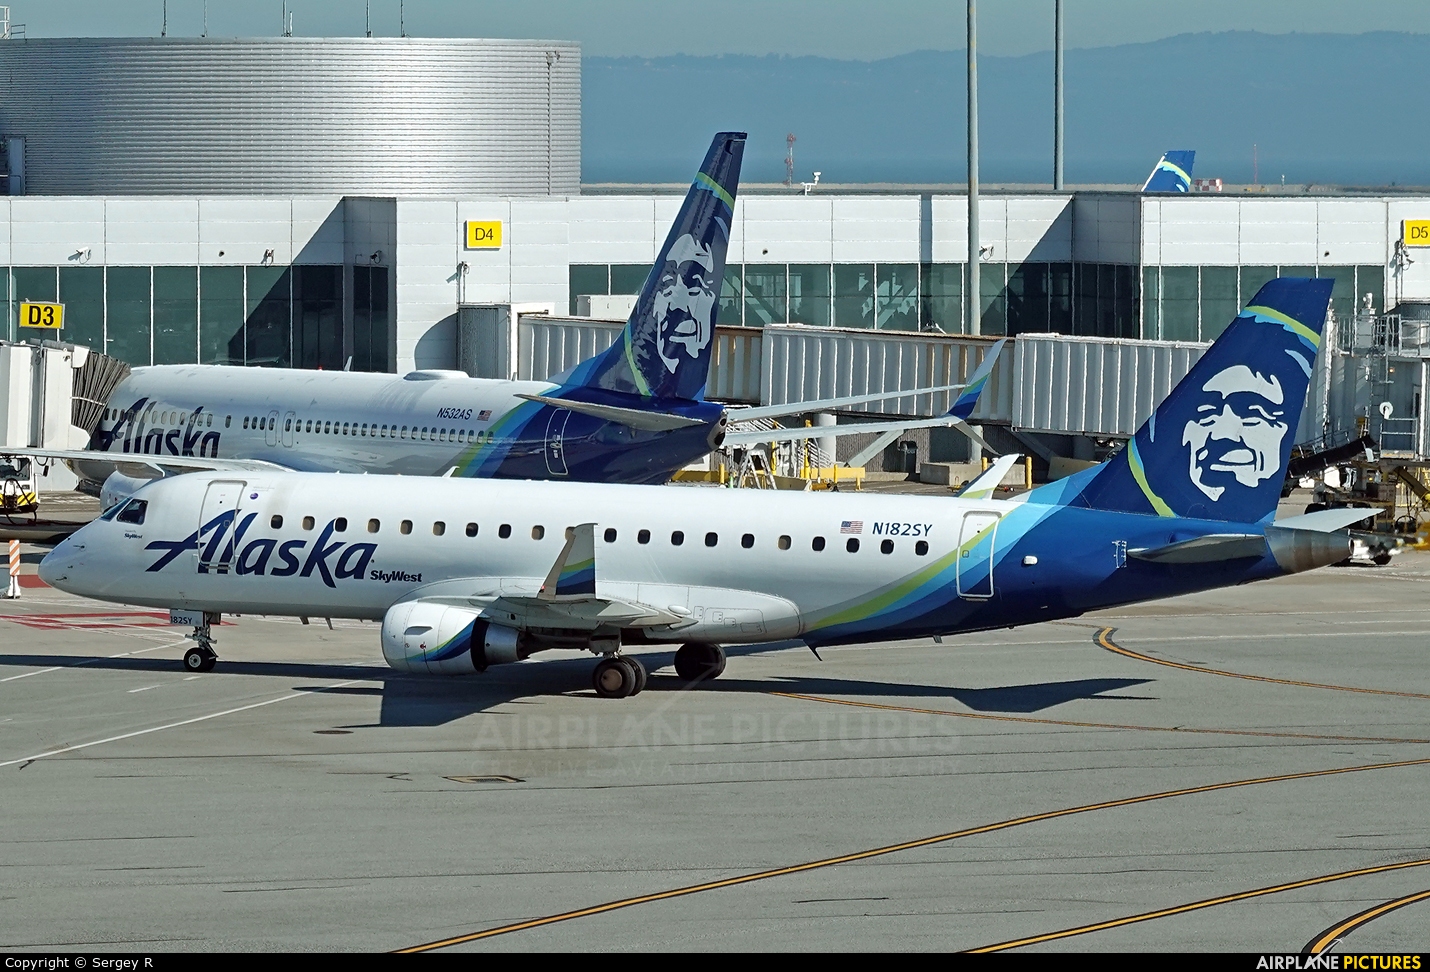 Alaska Airlines - Skywest N182SY aircraft at San Francisco Intl